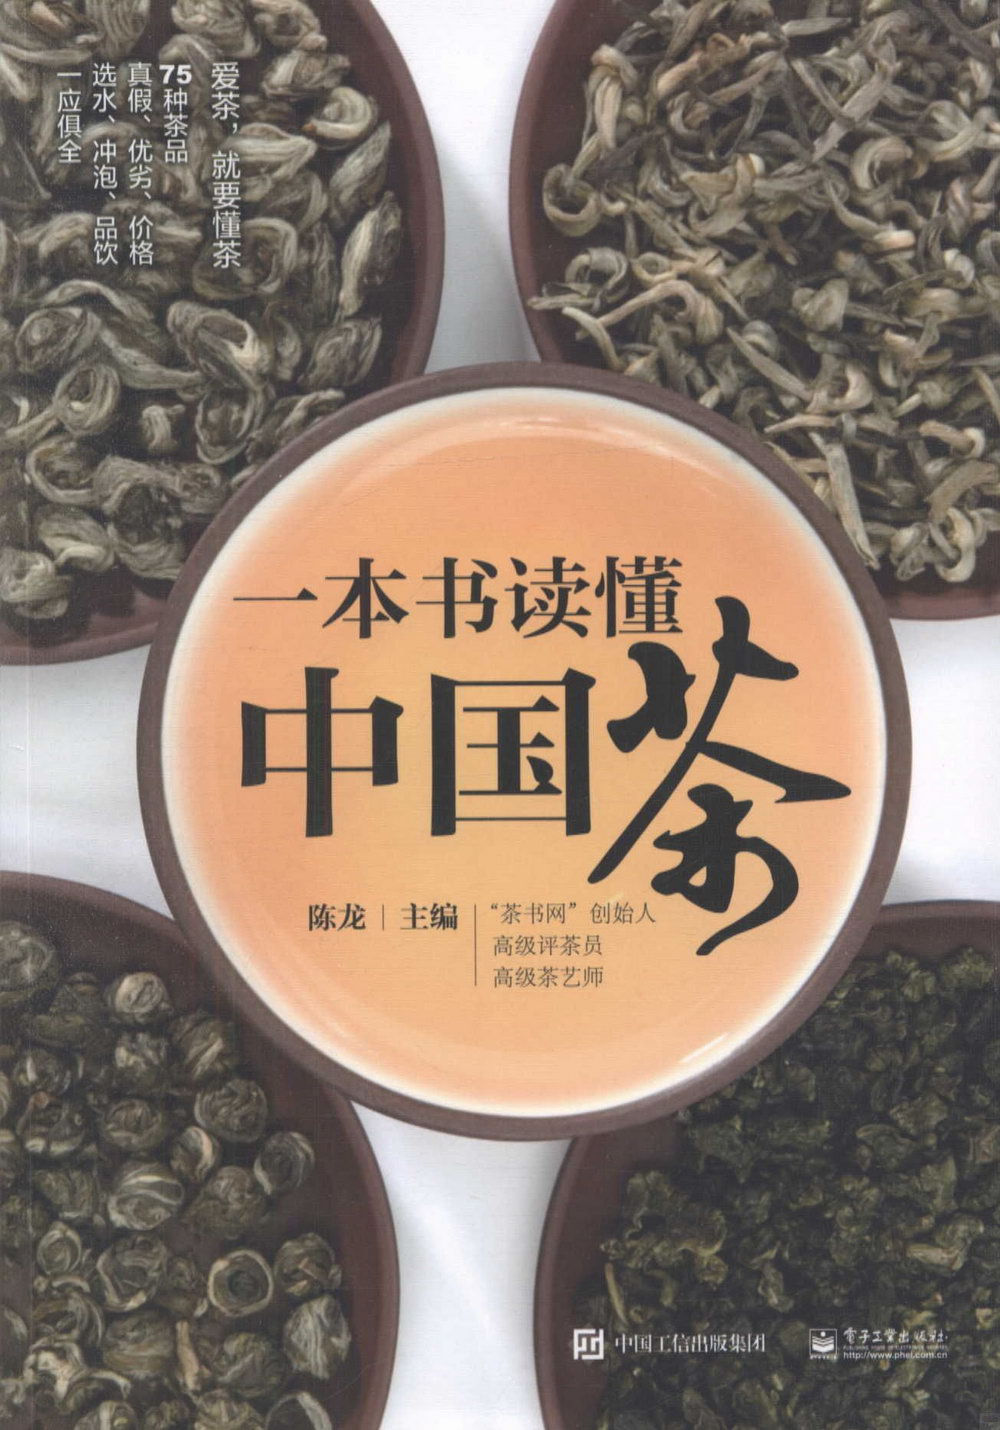 一本書讀懂中國茶